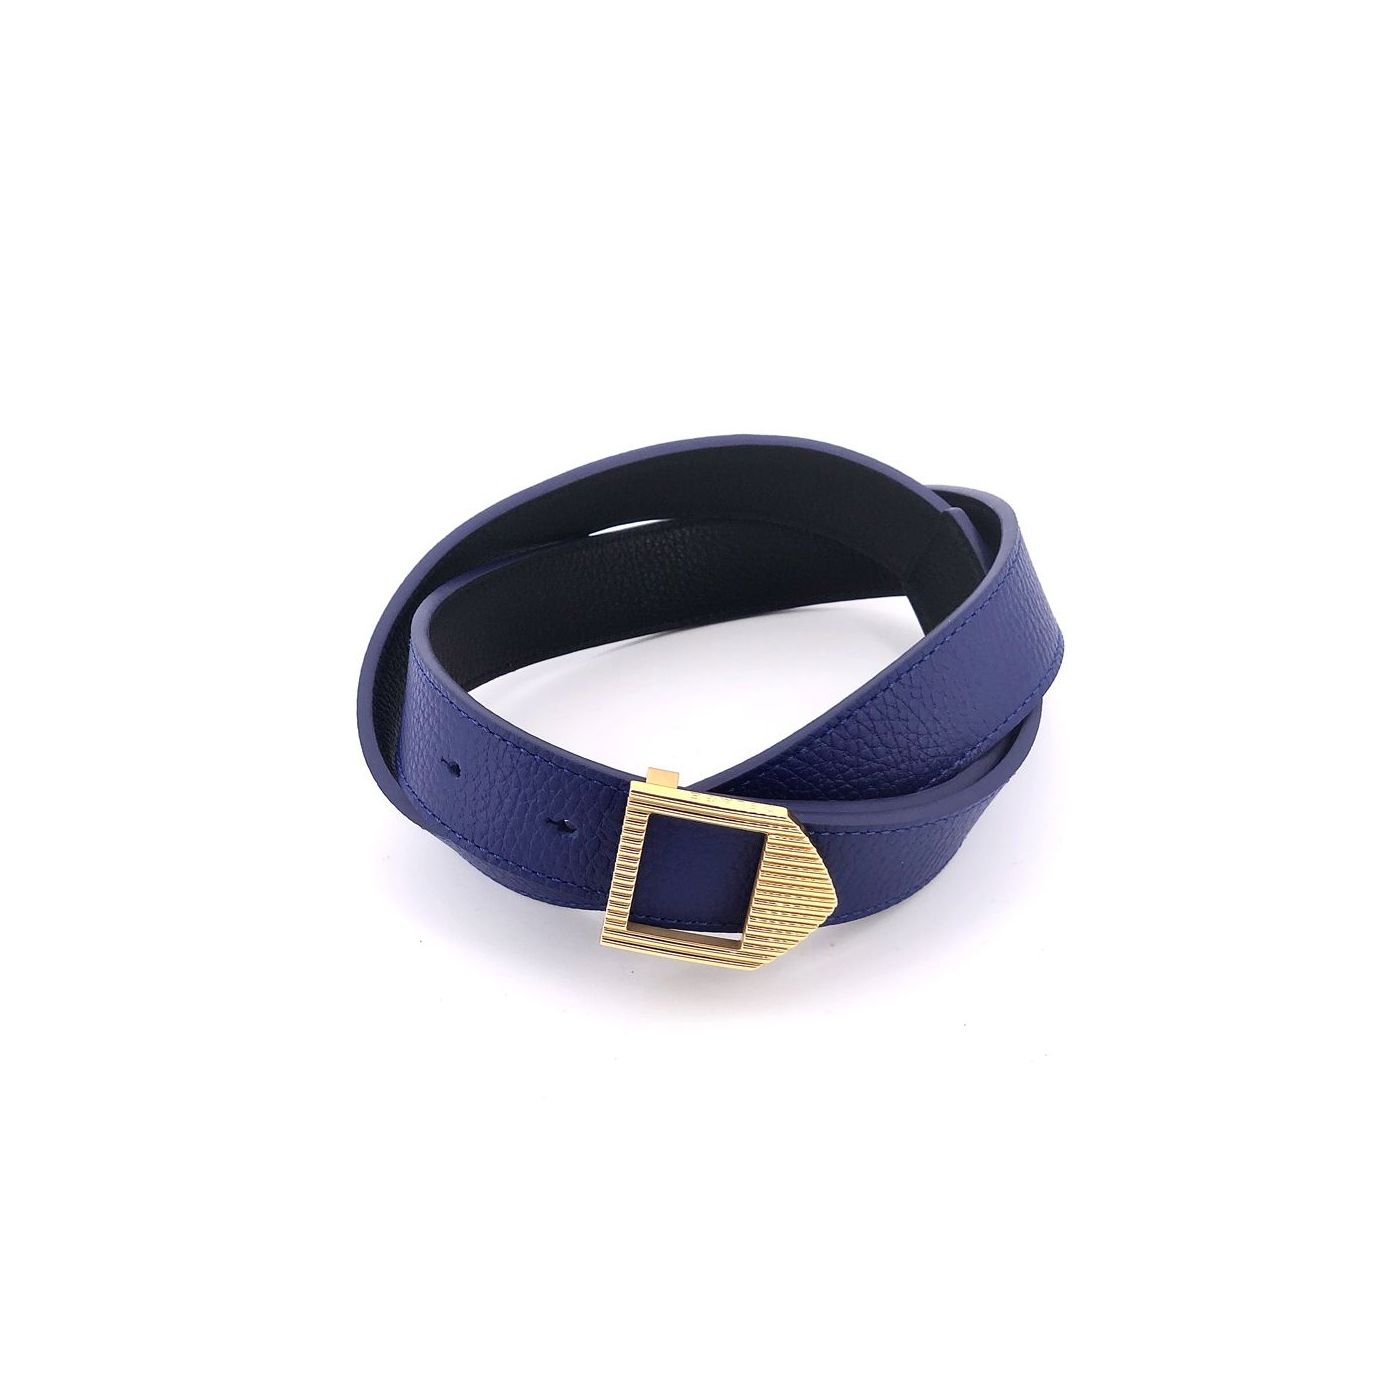 Reversible leather belt black & blue / gold buckle